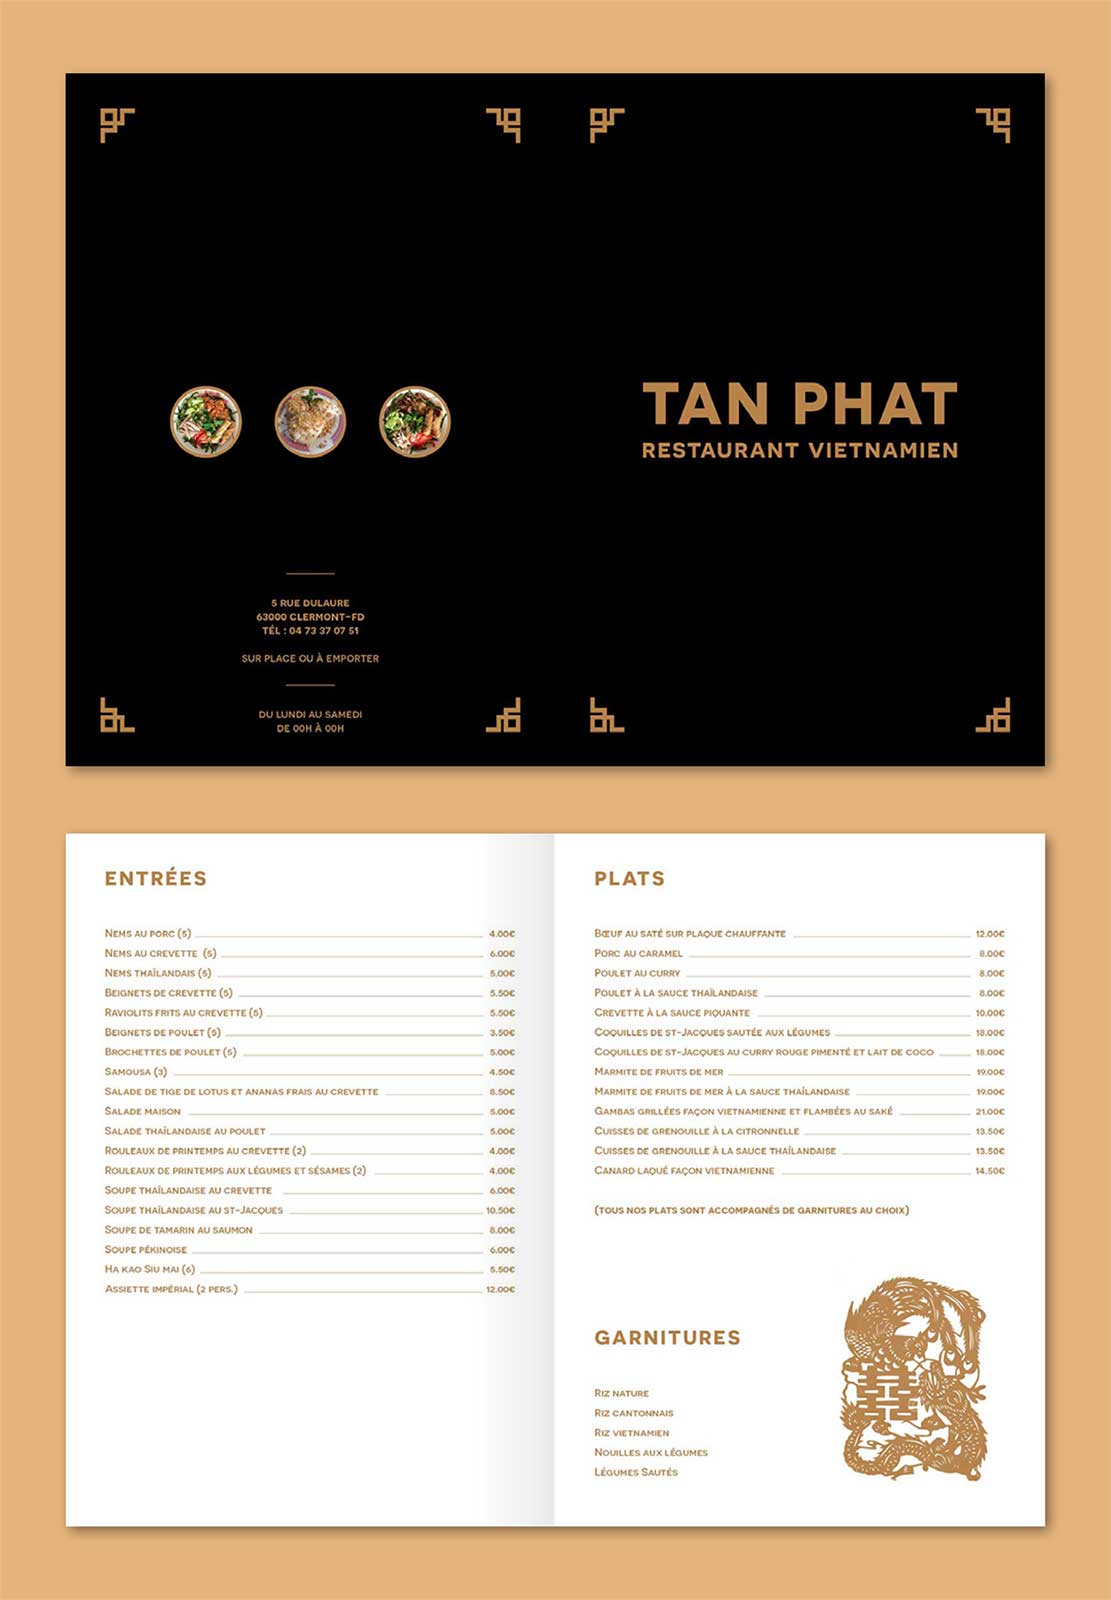 Tan Phat